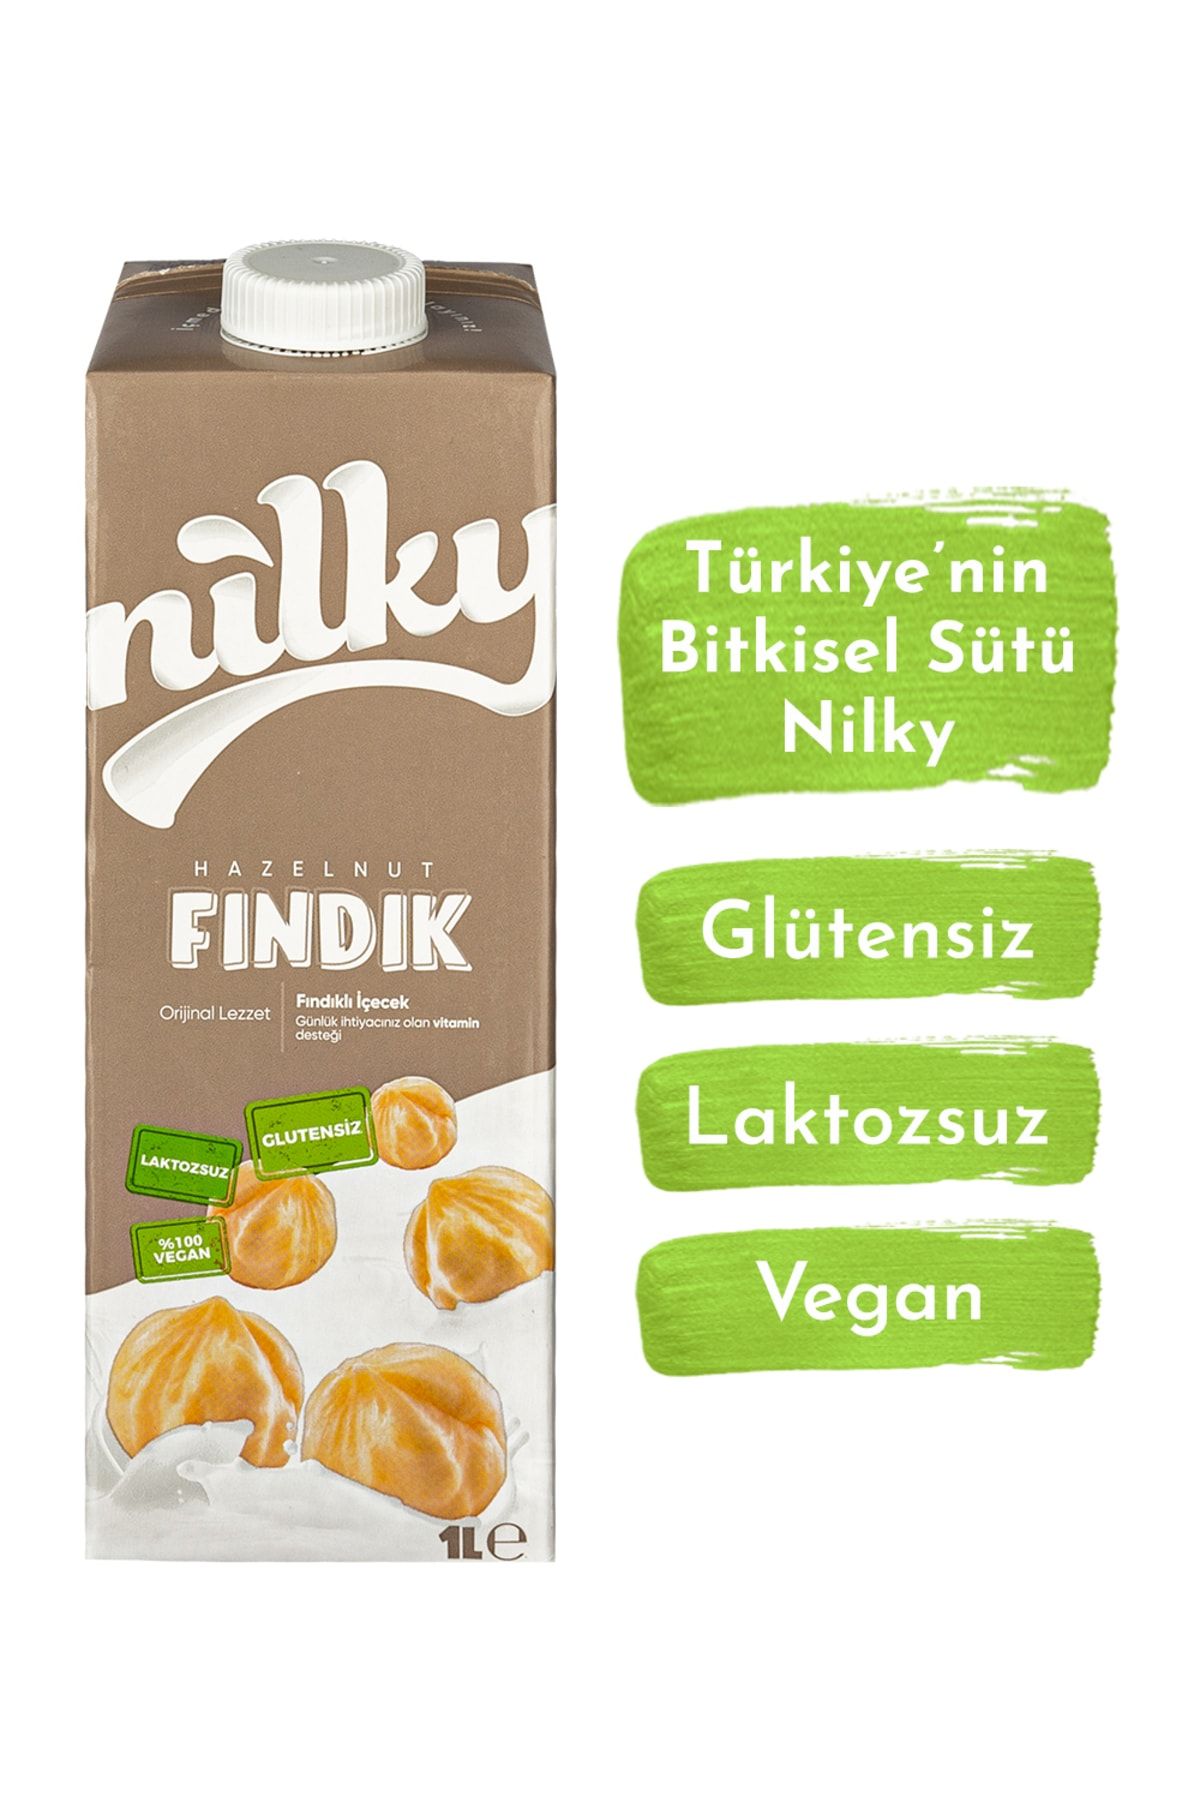 NİLKY Fındık Sütü Glütensiz Bitkisel Bazlı Laktosuz Vegan 1 Lt